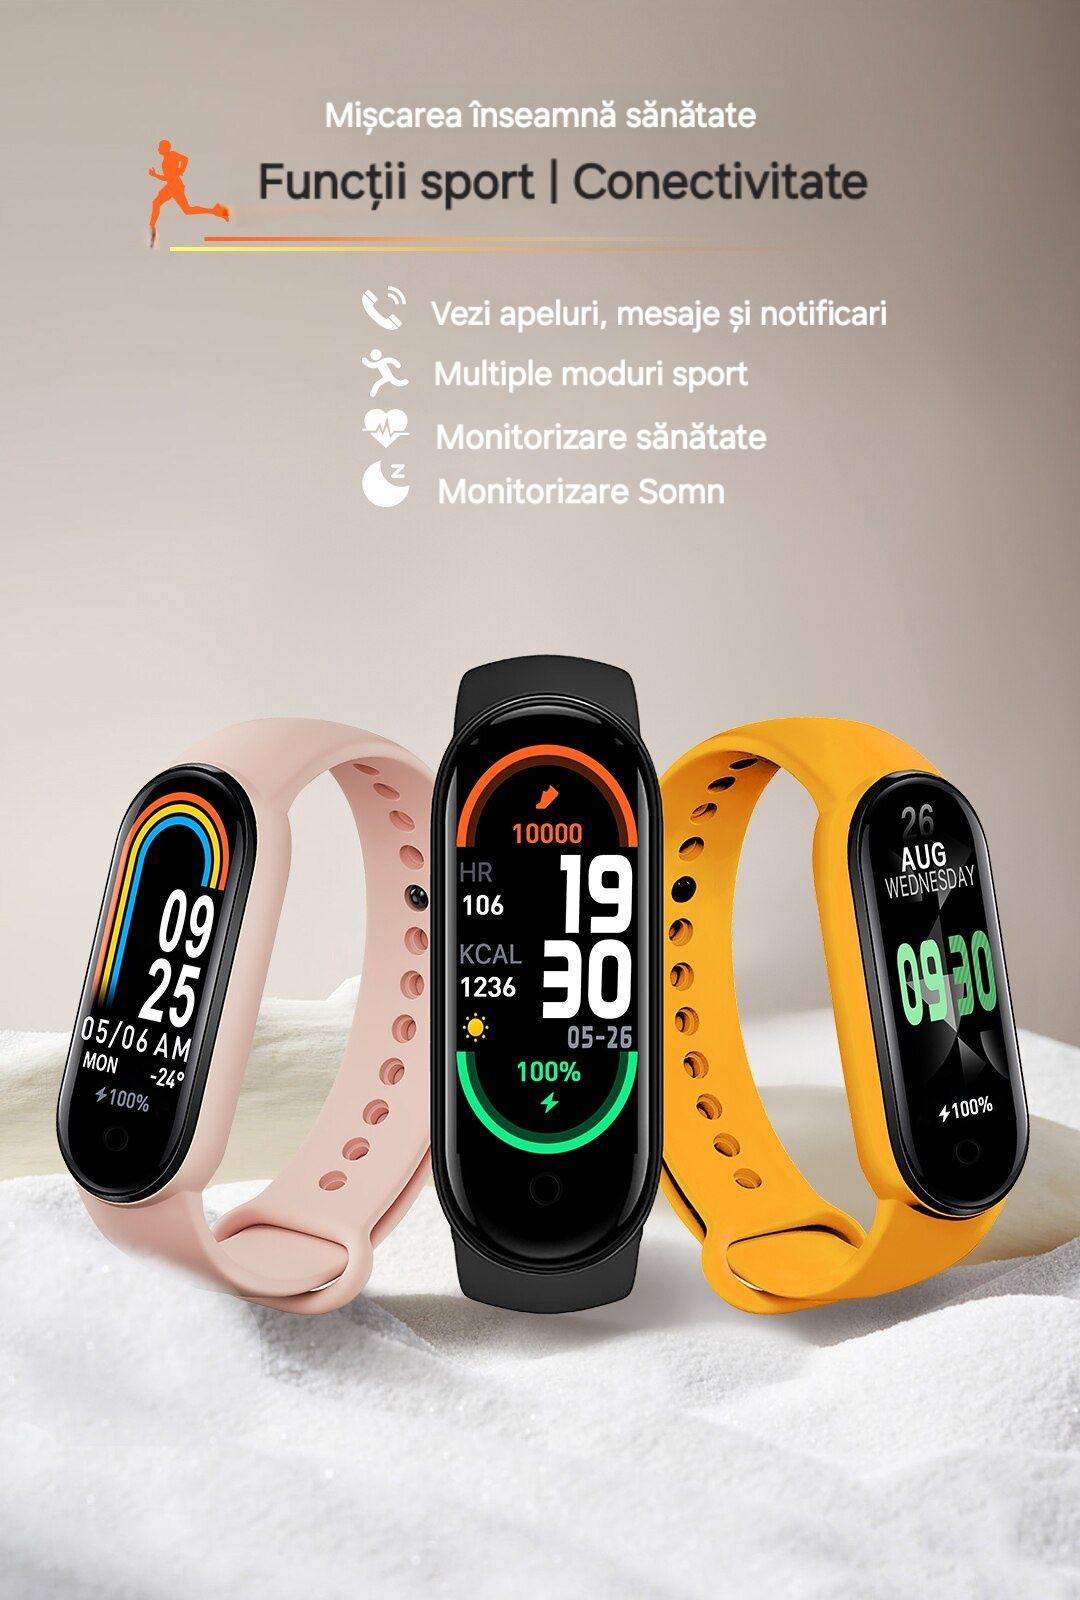 Smartwatch delicat. Toate funcțiile: sport, sănătate, apel, mesaje etc